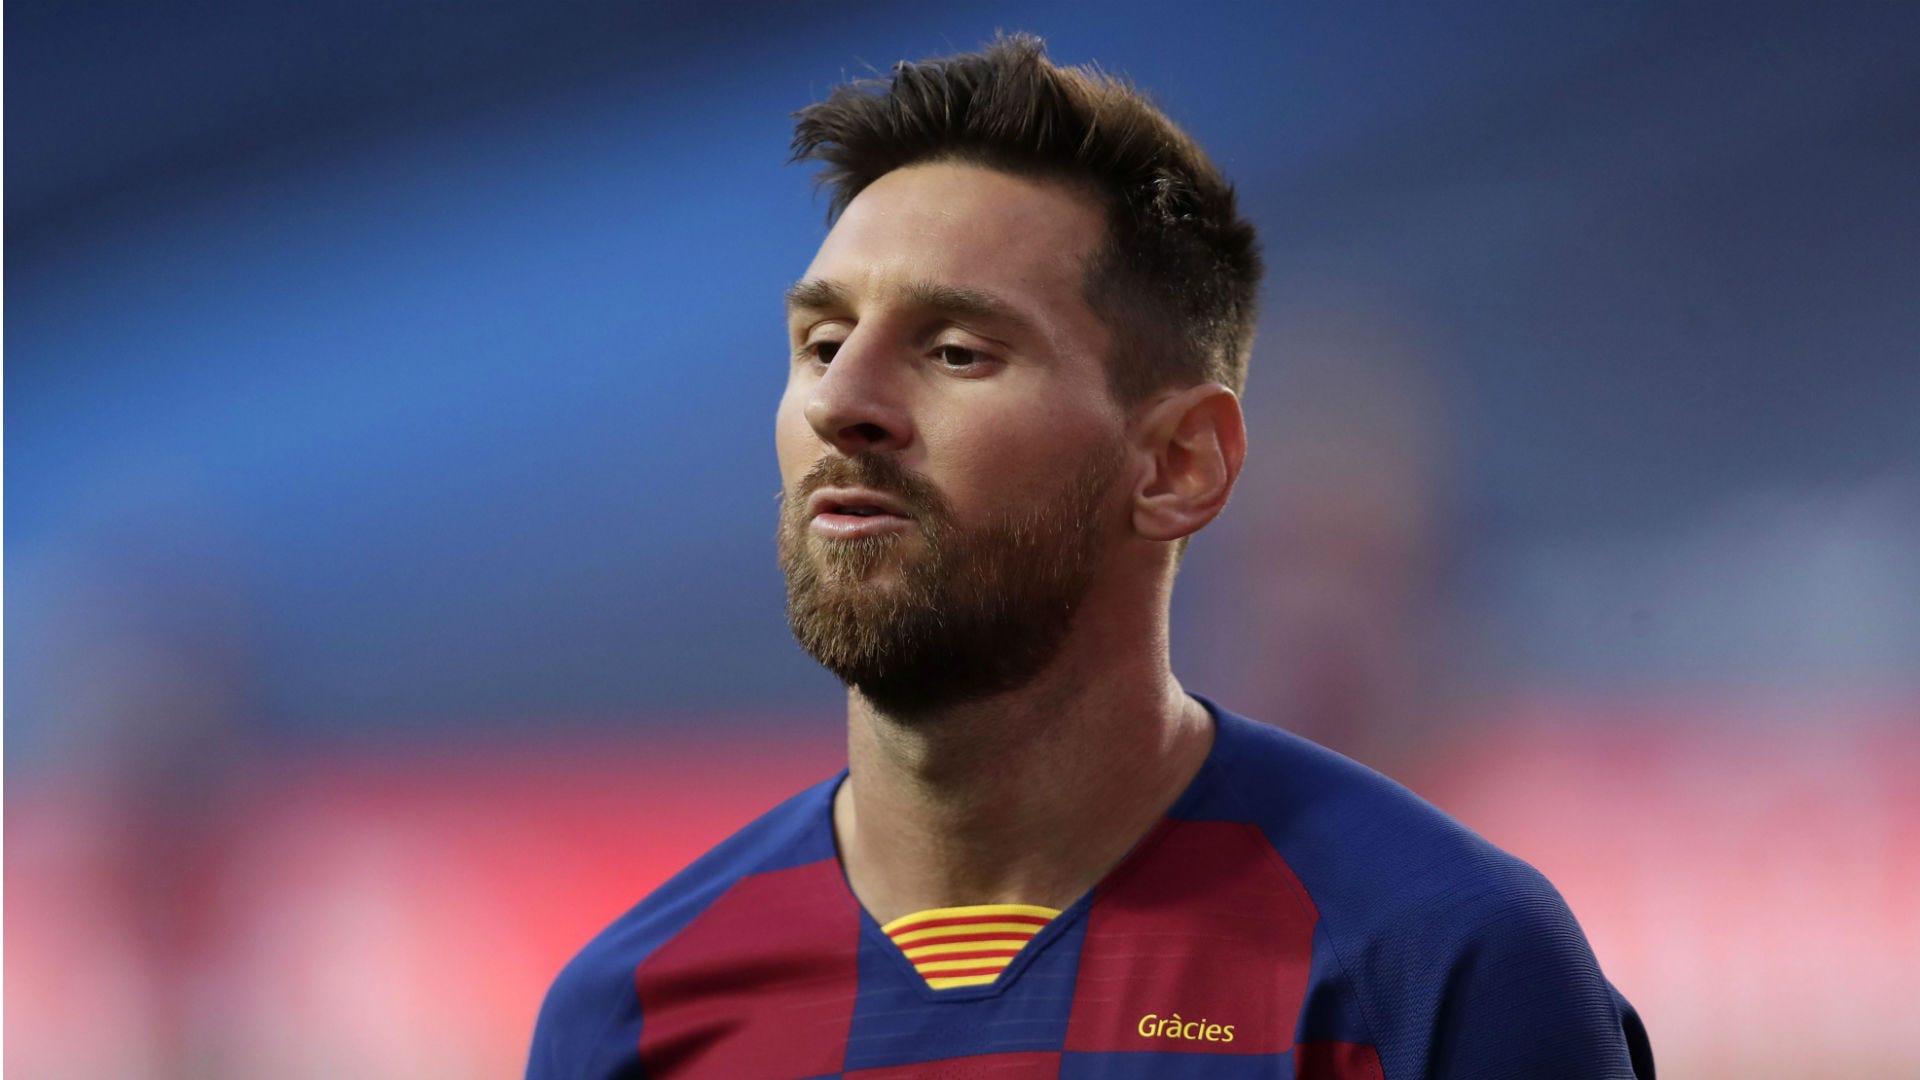 Tin vui cho fan của Messi! Anh ta đã trở lại tập luyện và sẵn sàng cho trận đấu sắp tới. Hãy cùng xem những hình ảnh đầy nhiệt huyết và giúp cổ động viên cảm nhận các giây phút ấm áp trong trái tim của ngôi sao bóng đá này.